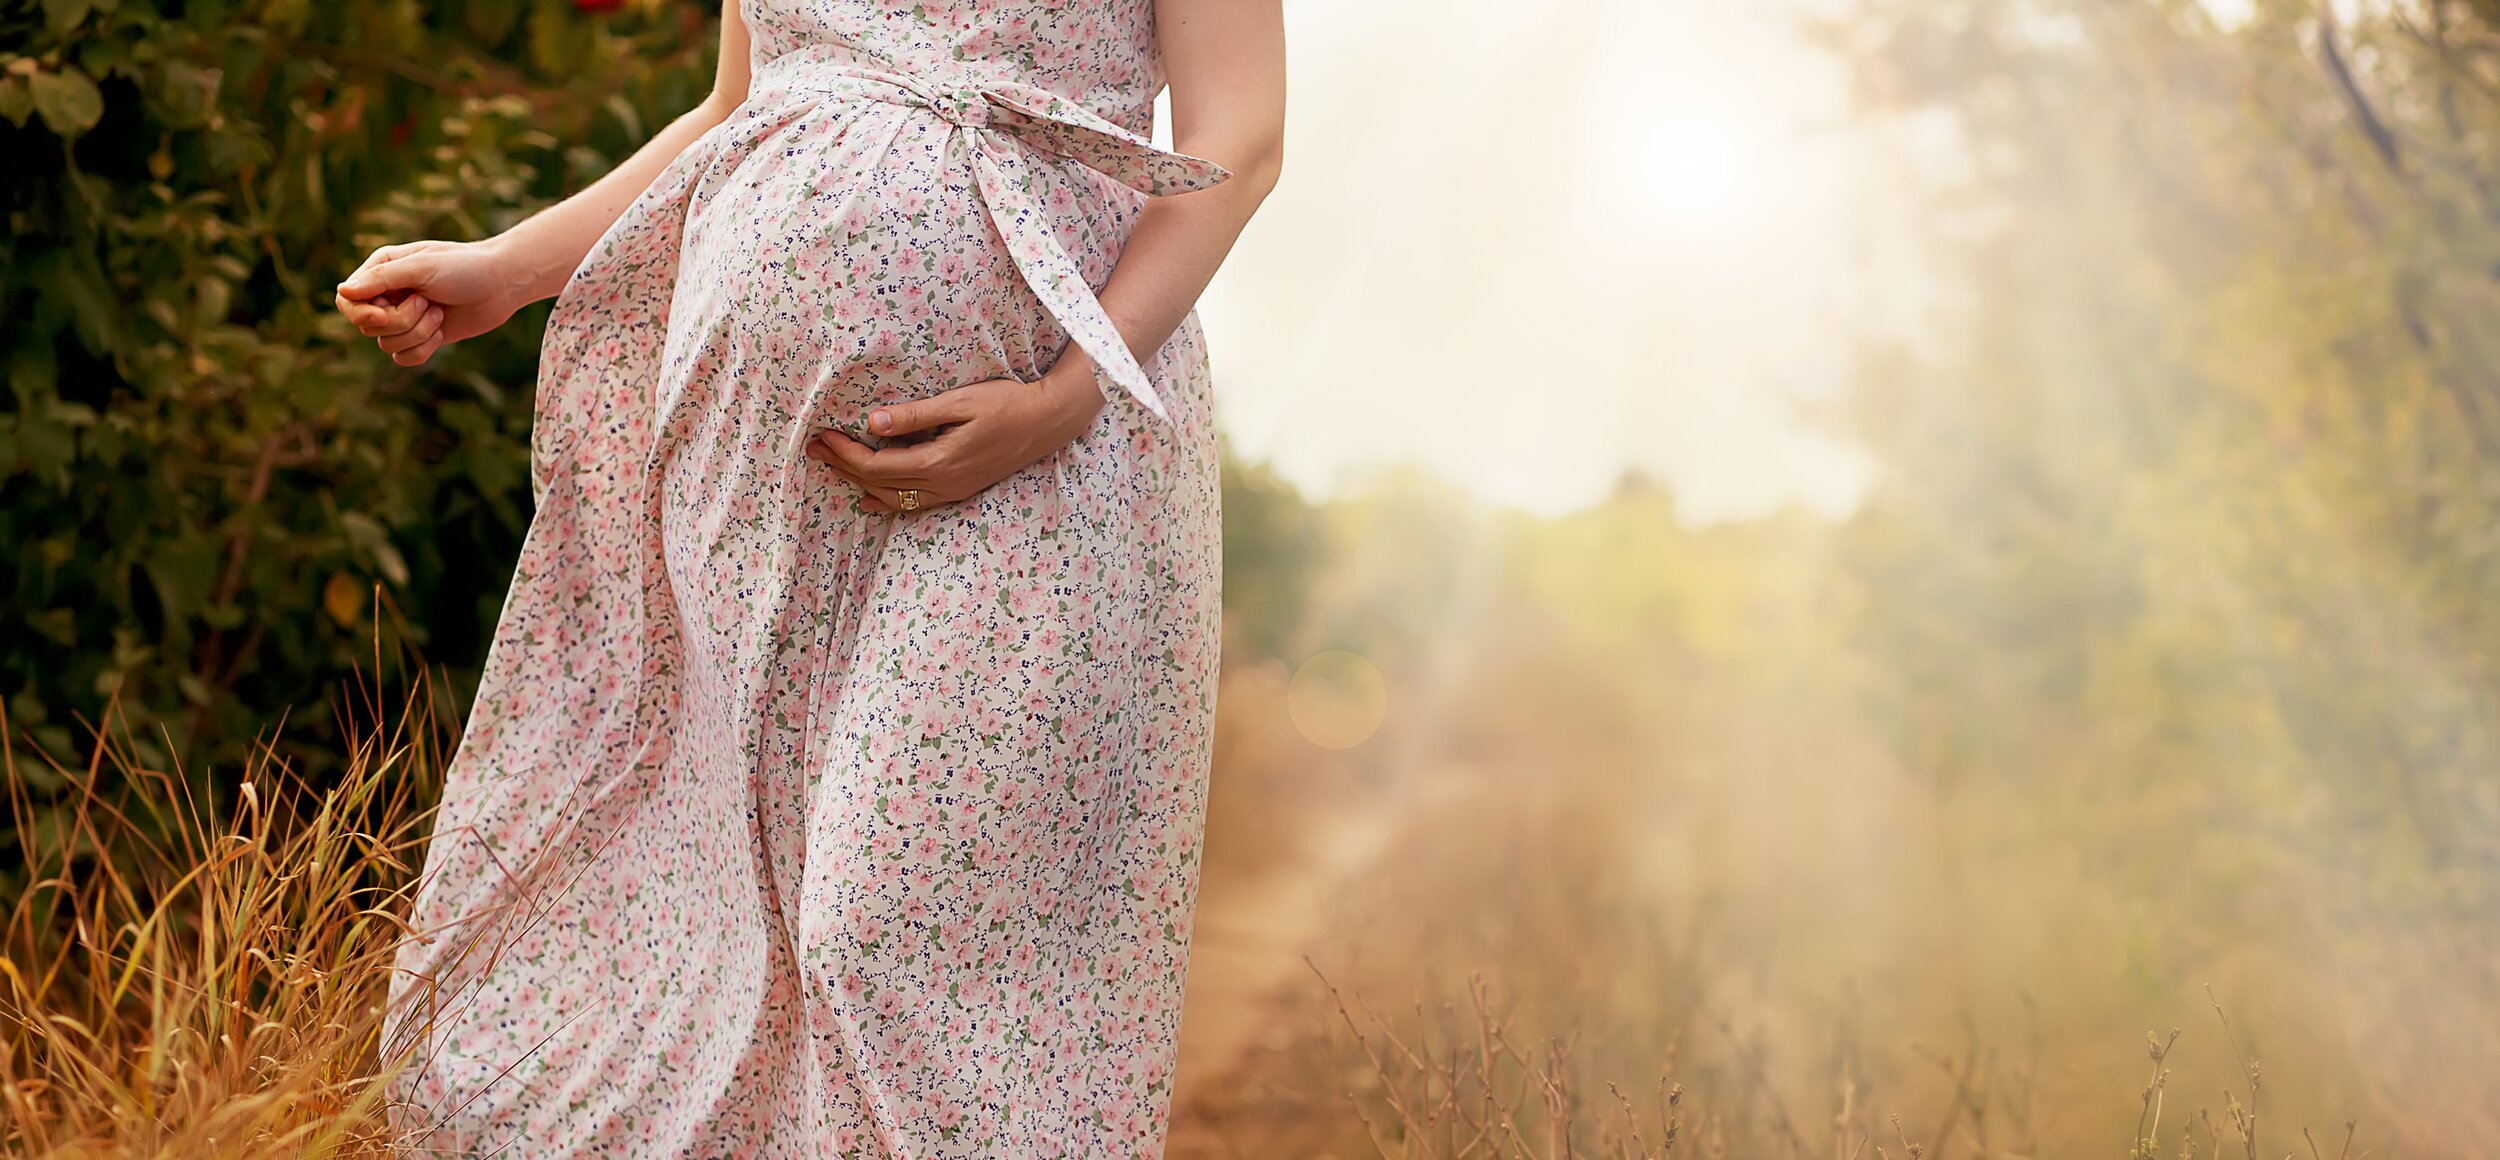 Schwangere Frau steht barfuss auf einem Waldweg in einem geblümten Kleid.